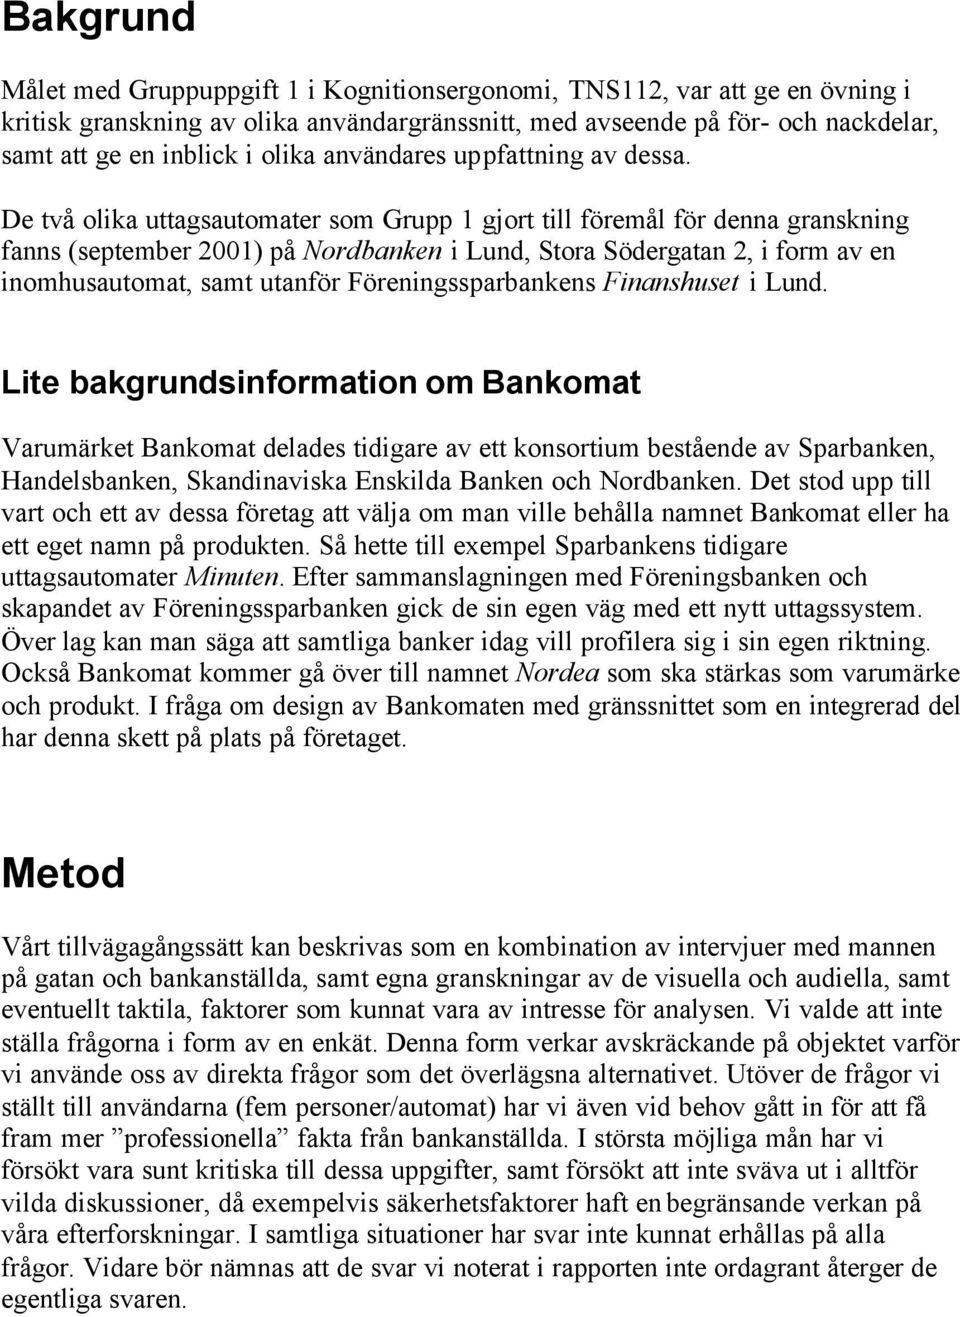 De två olika uttagsautomater som Grupp 1 gjort till föremål för denna granskning fanns (september 2001) på Nordbanken i Lund, Stora Södergatan 2, i form av en inomhusautomat, samt utanför